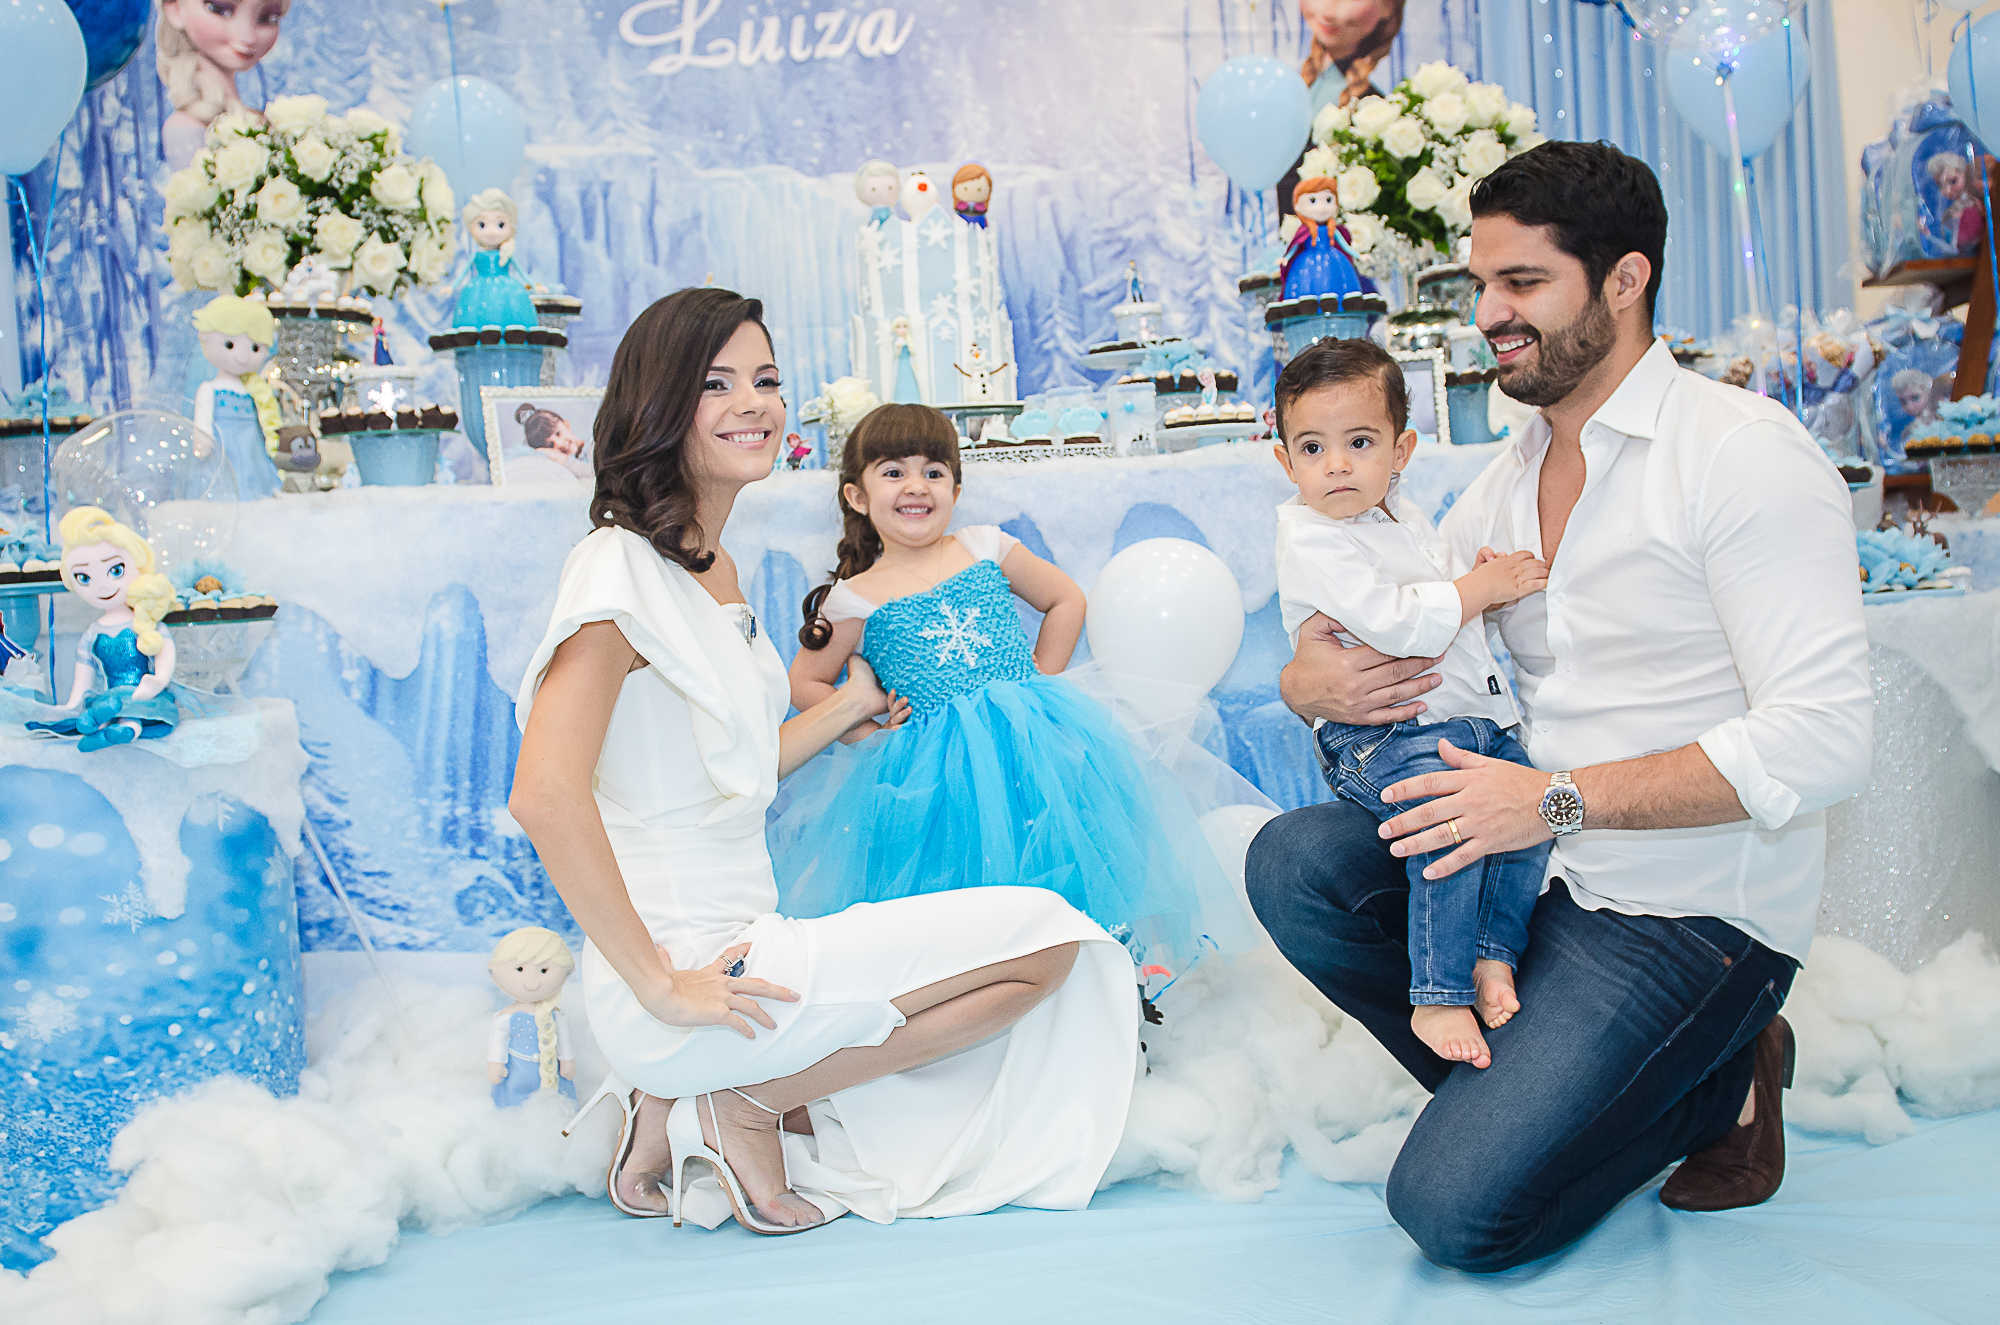 Frozen é tema da festa de 3 anos de Luiza, filha de Priscilla e Bruno Becco